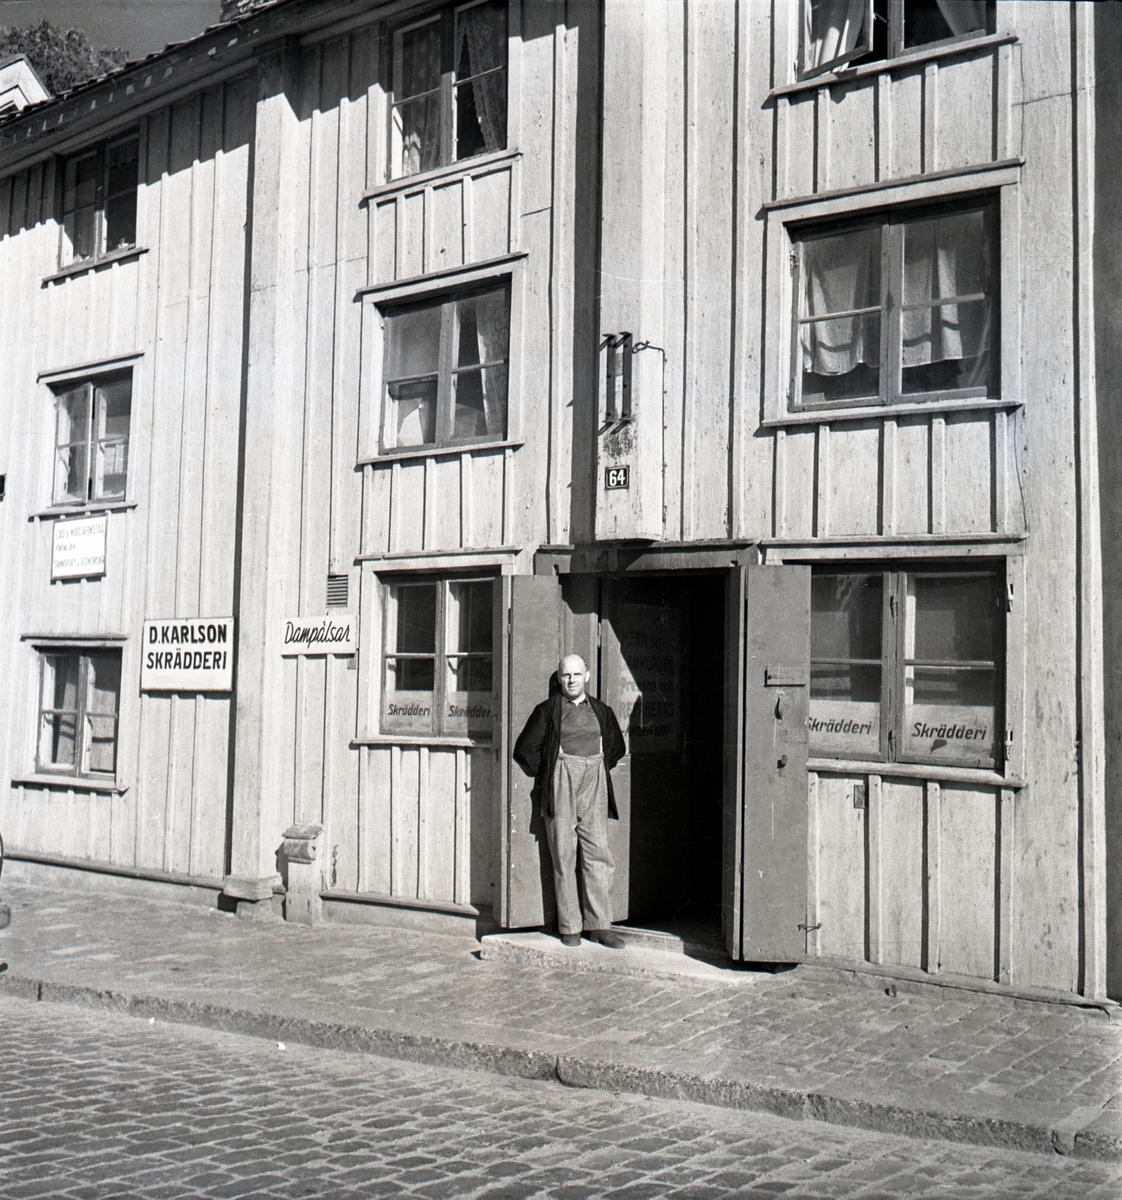 Skräddarmästare Johansson står vid sin affär på Borggården vid Pilens backe.

Kopparslagaregården: Huset flyttades till Gamla Linköping från Storgatan 64. Senast 1754 stod byggnaden färdig, då öppnades nämligen kryddkramhandel i gården. I mitten av 1750-talet lades gränden mellan Järntorget (Kryddbodtorget) och S:t Korsgatan (Rådmansgatan) ut över Lönnbergs tomt. Då blev gårdens portlider infart till gränden. Gathusets tredje våning byggdes på av handlare Pihl vid mitten av 1810-talet.